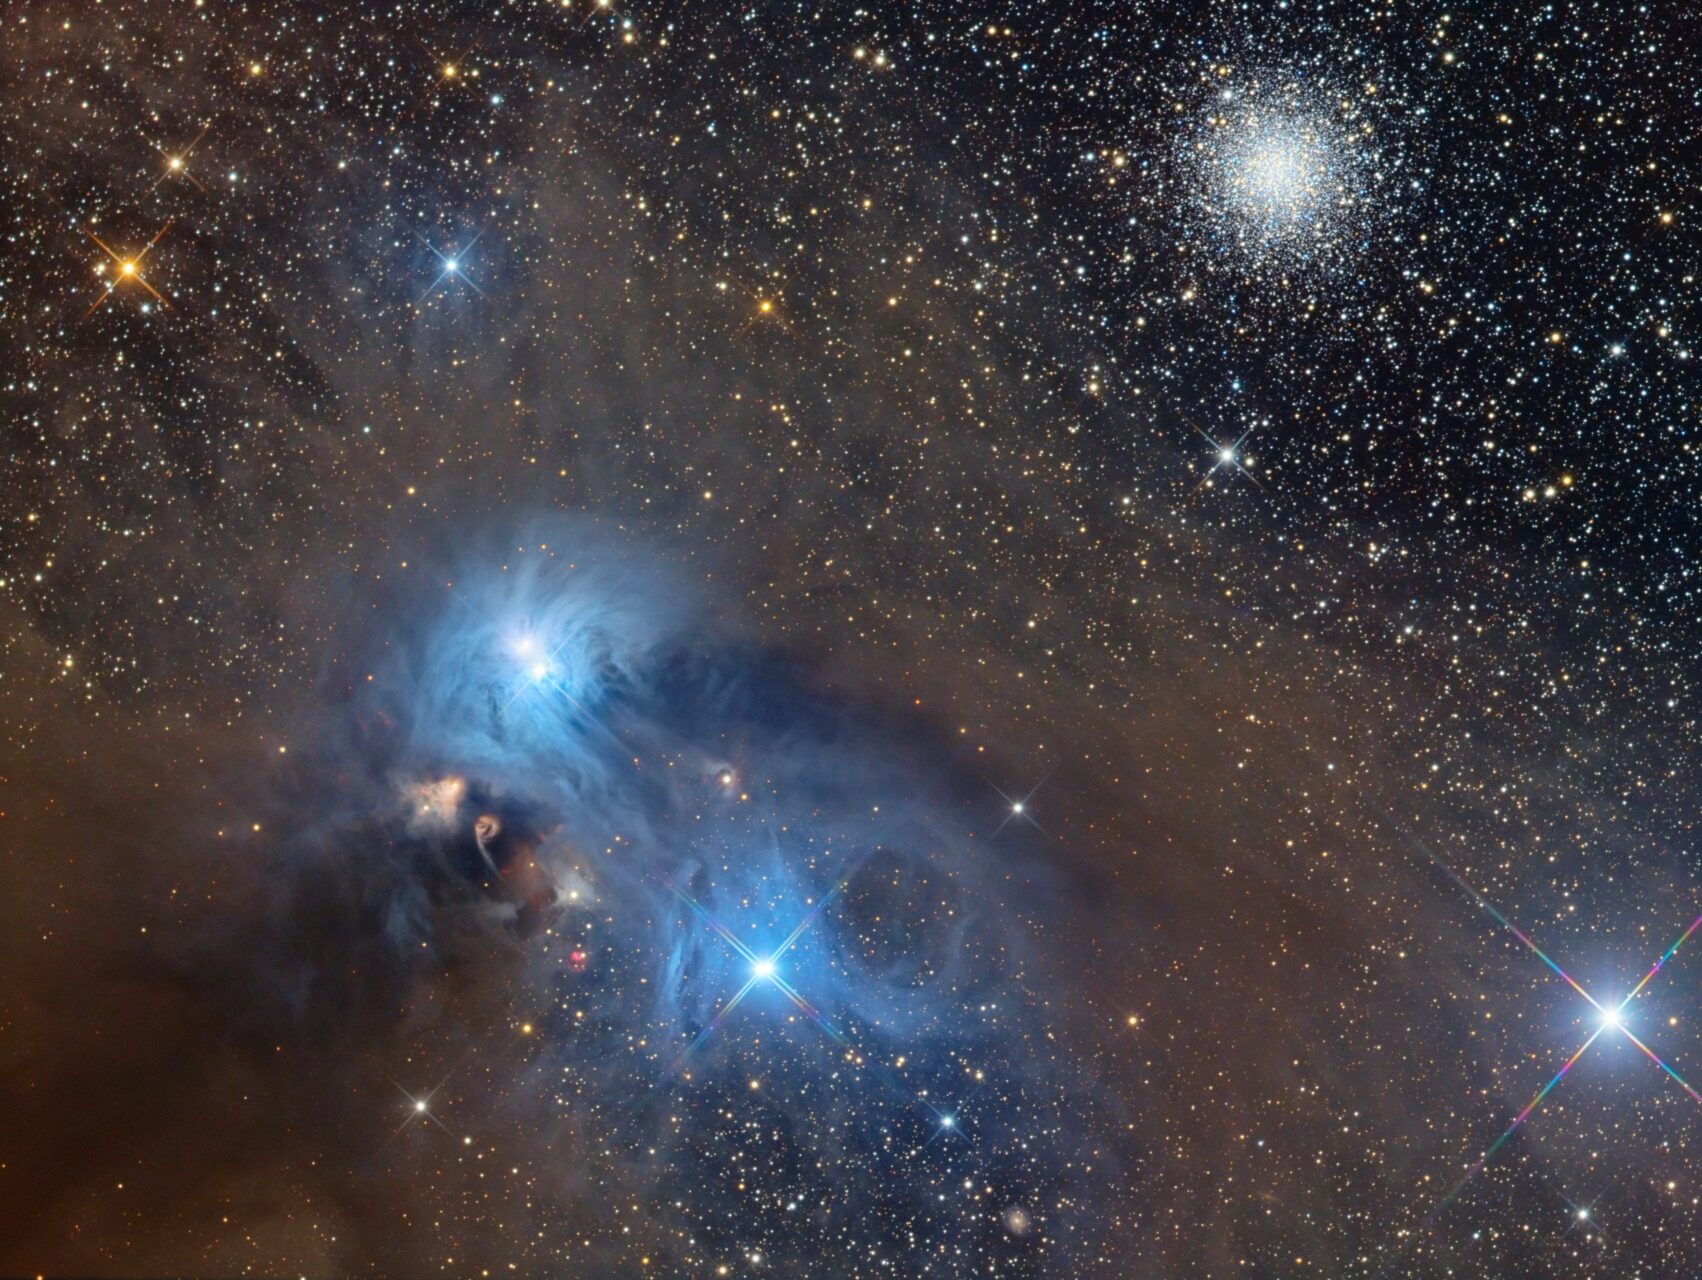 NGC 6726